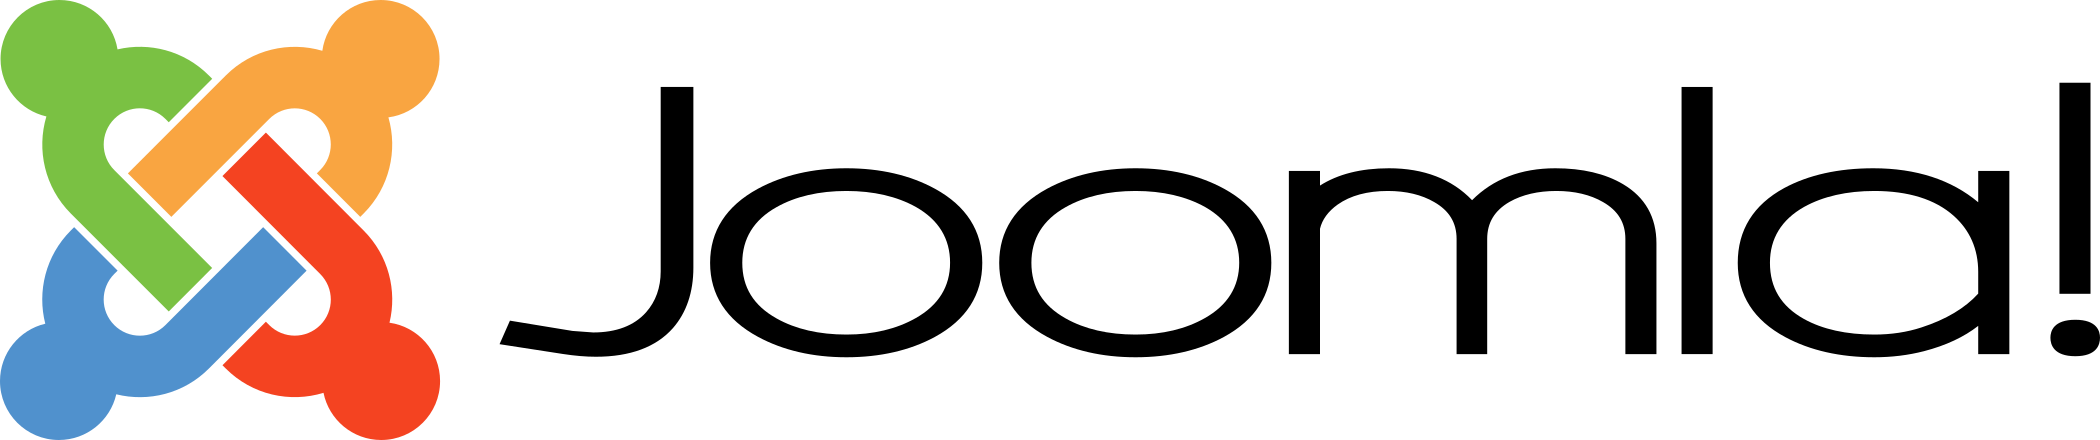 joomla logo 2